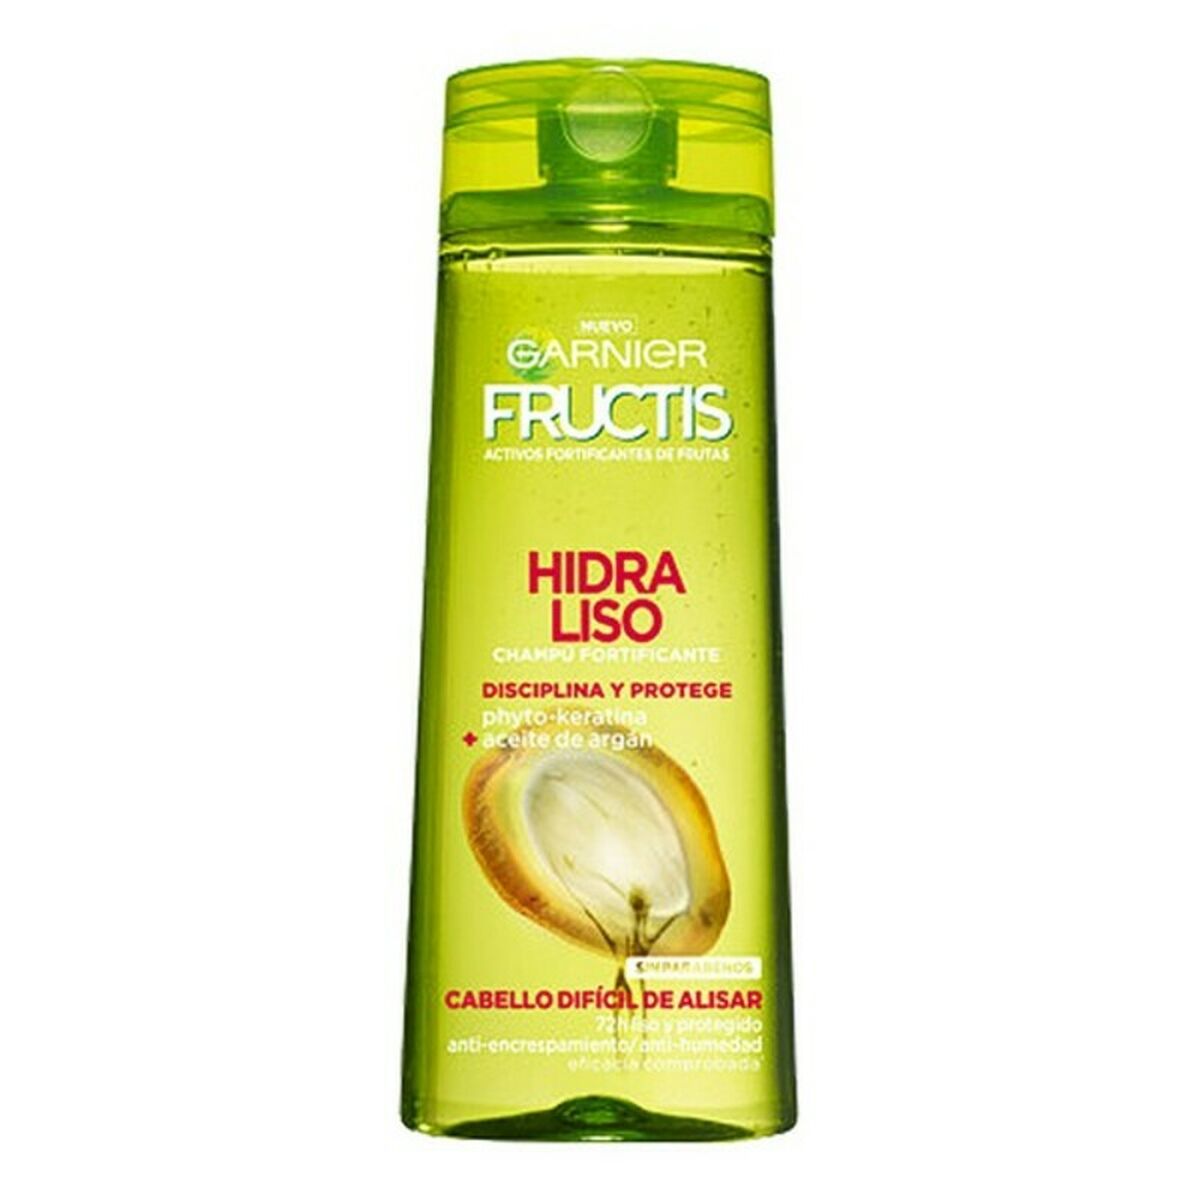 Glättendes Shampoo Fructis Hidra Liso 72h Garnier (360 ml)